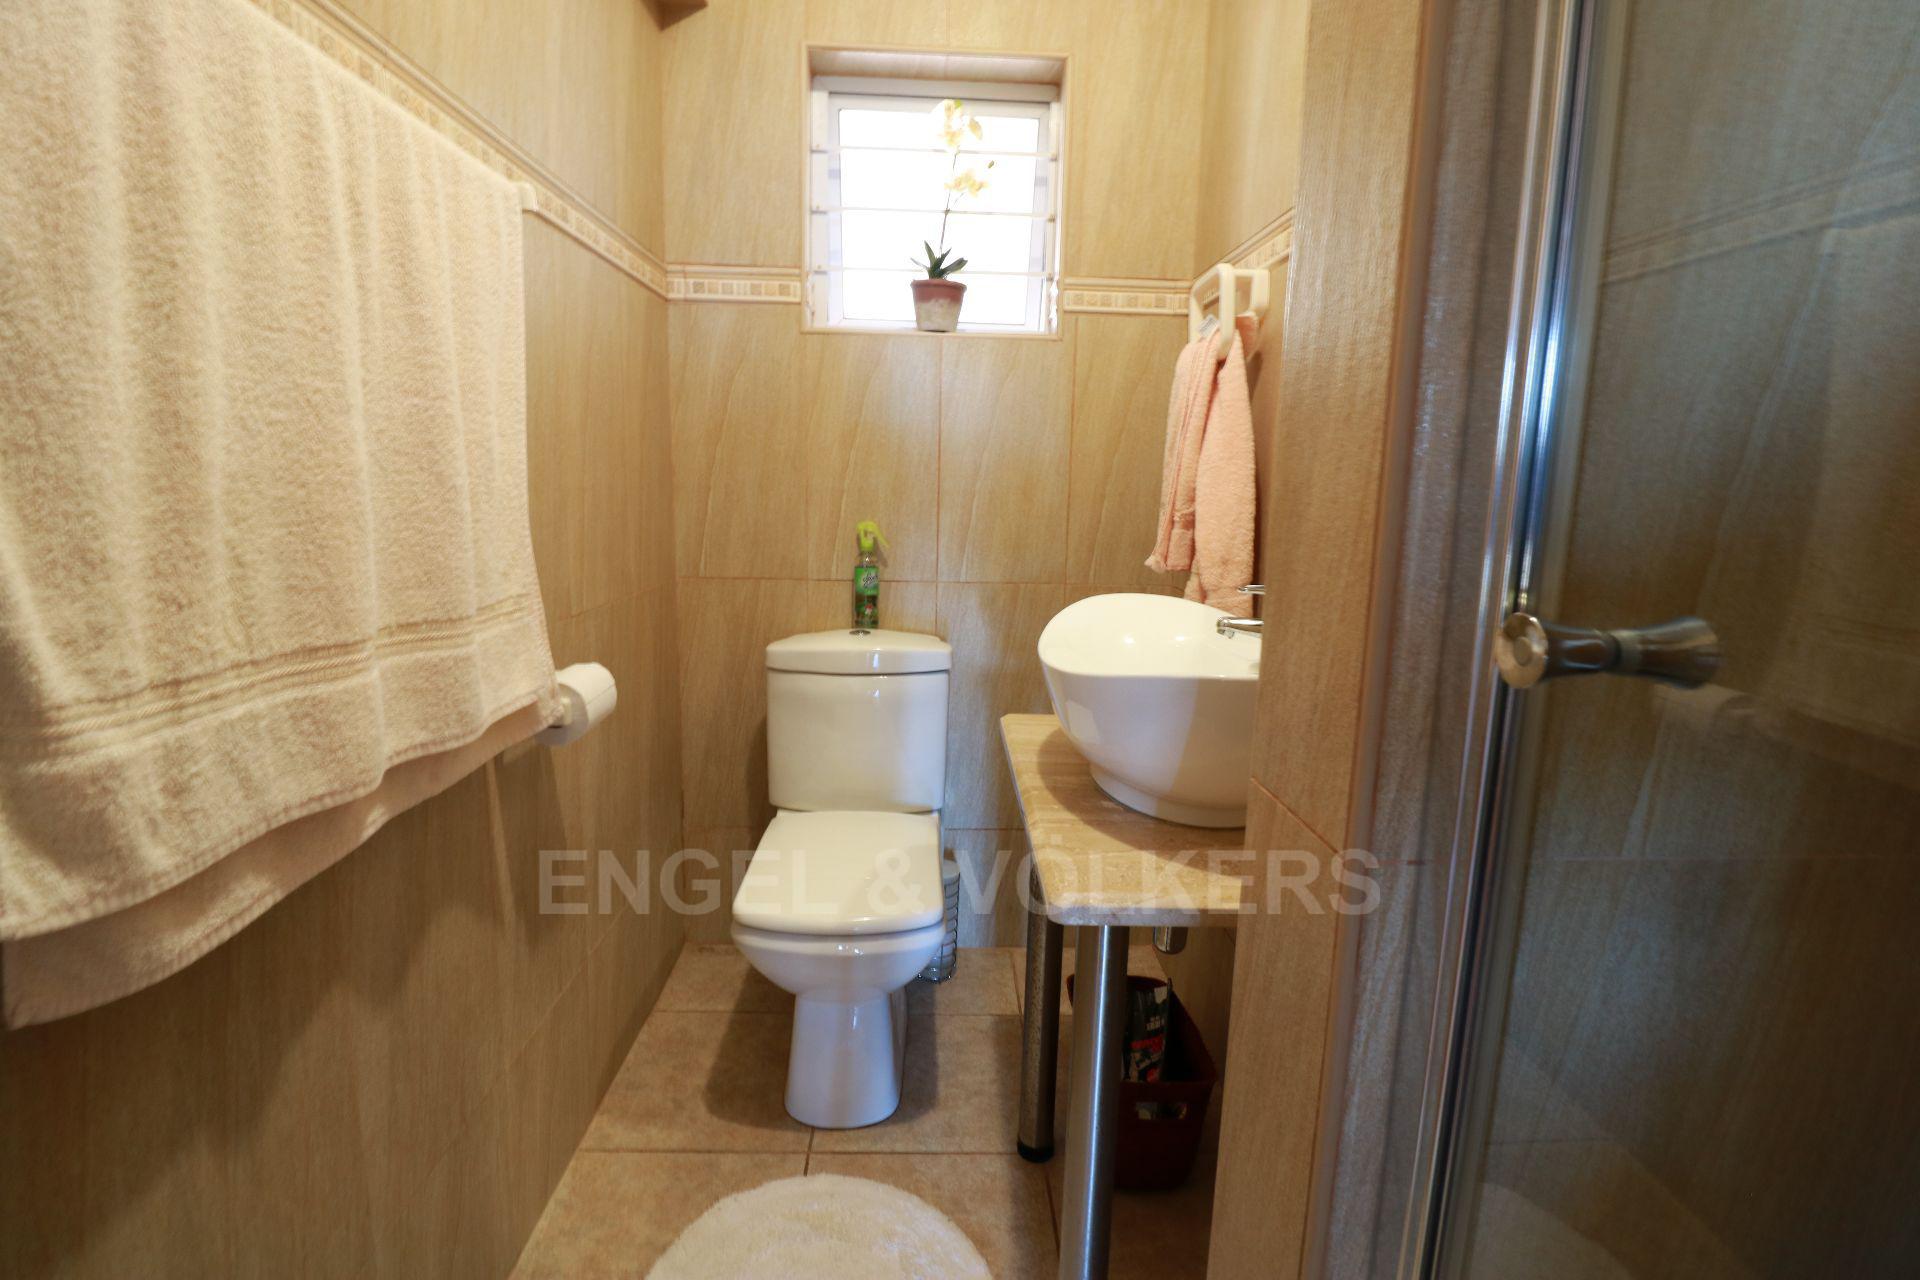 House in Ramsgate - 033 - Guest Toilet.JPG